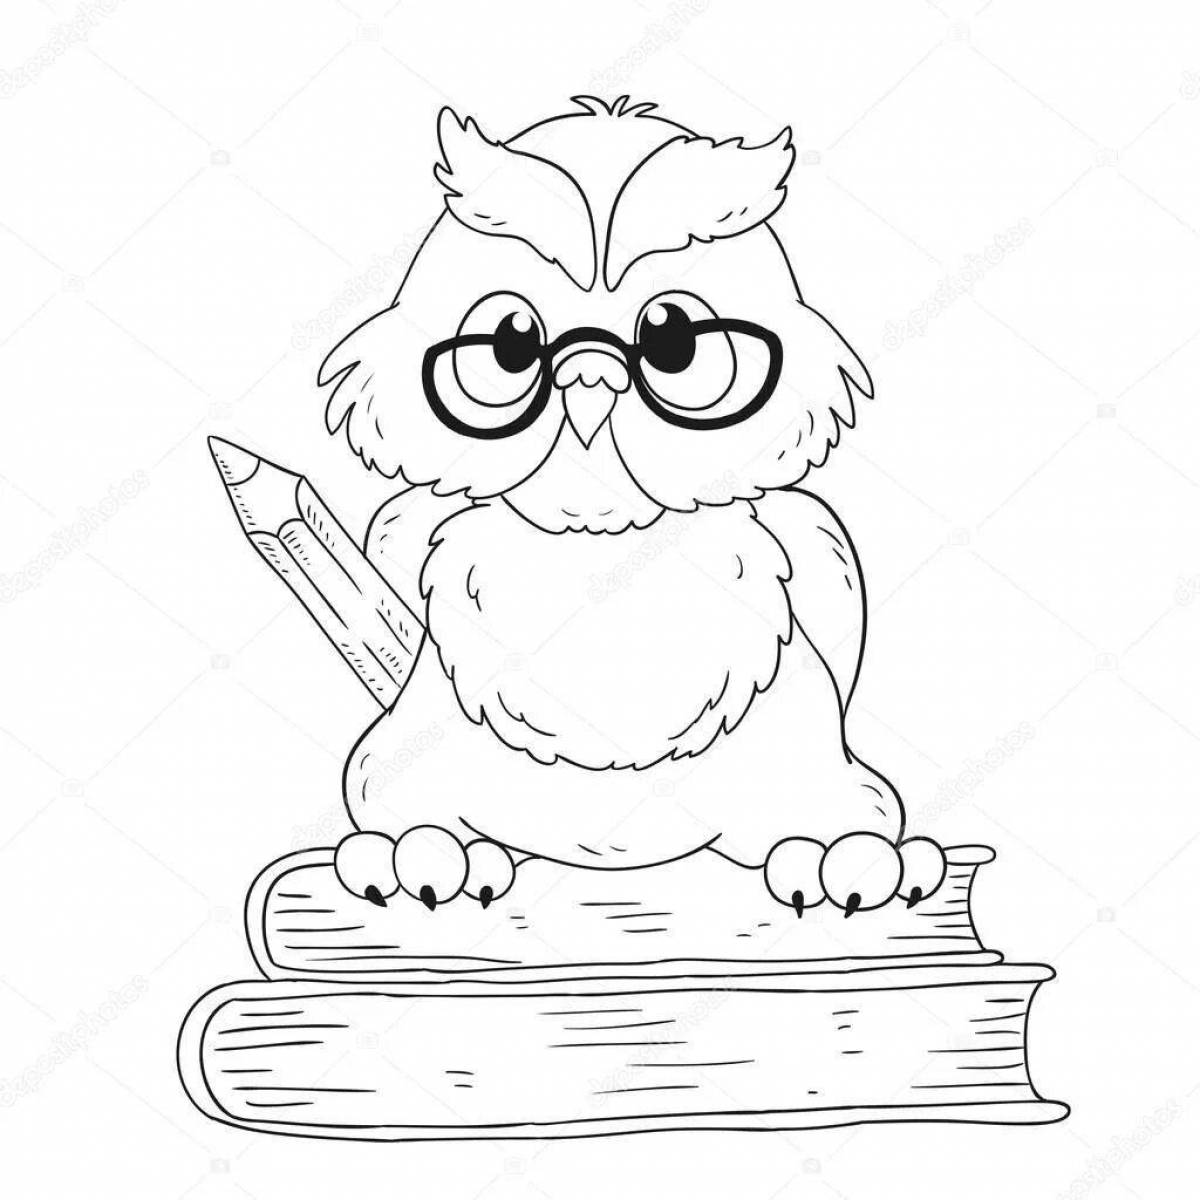 Scientist owl #1